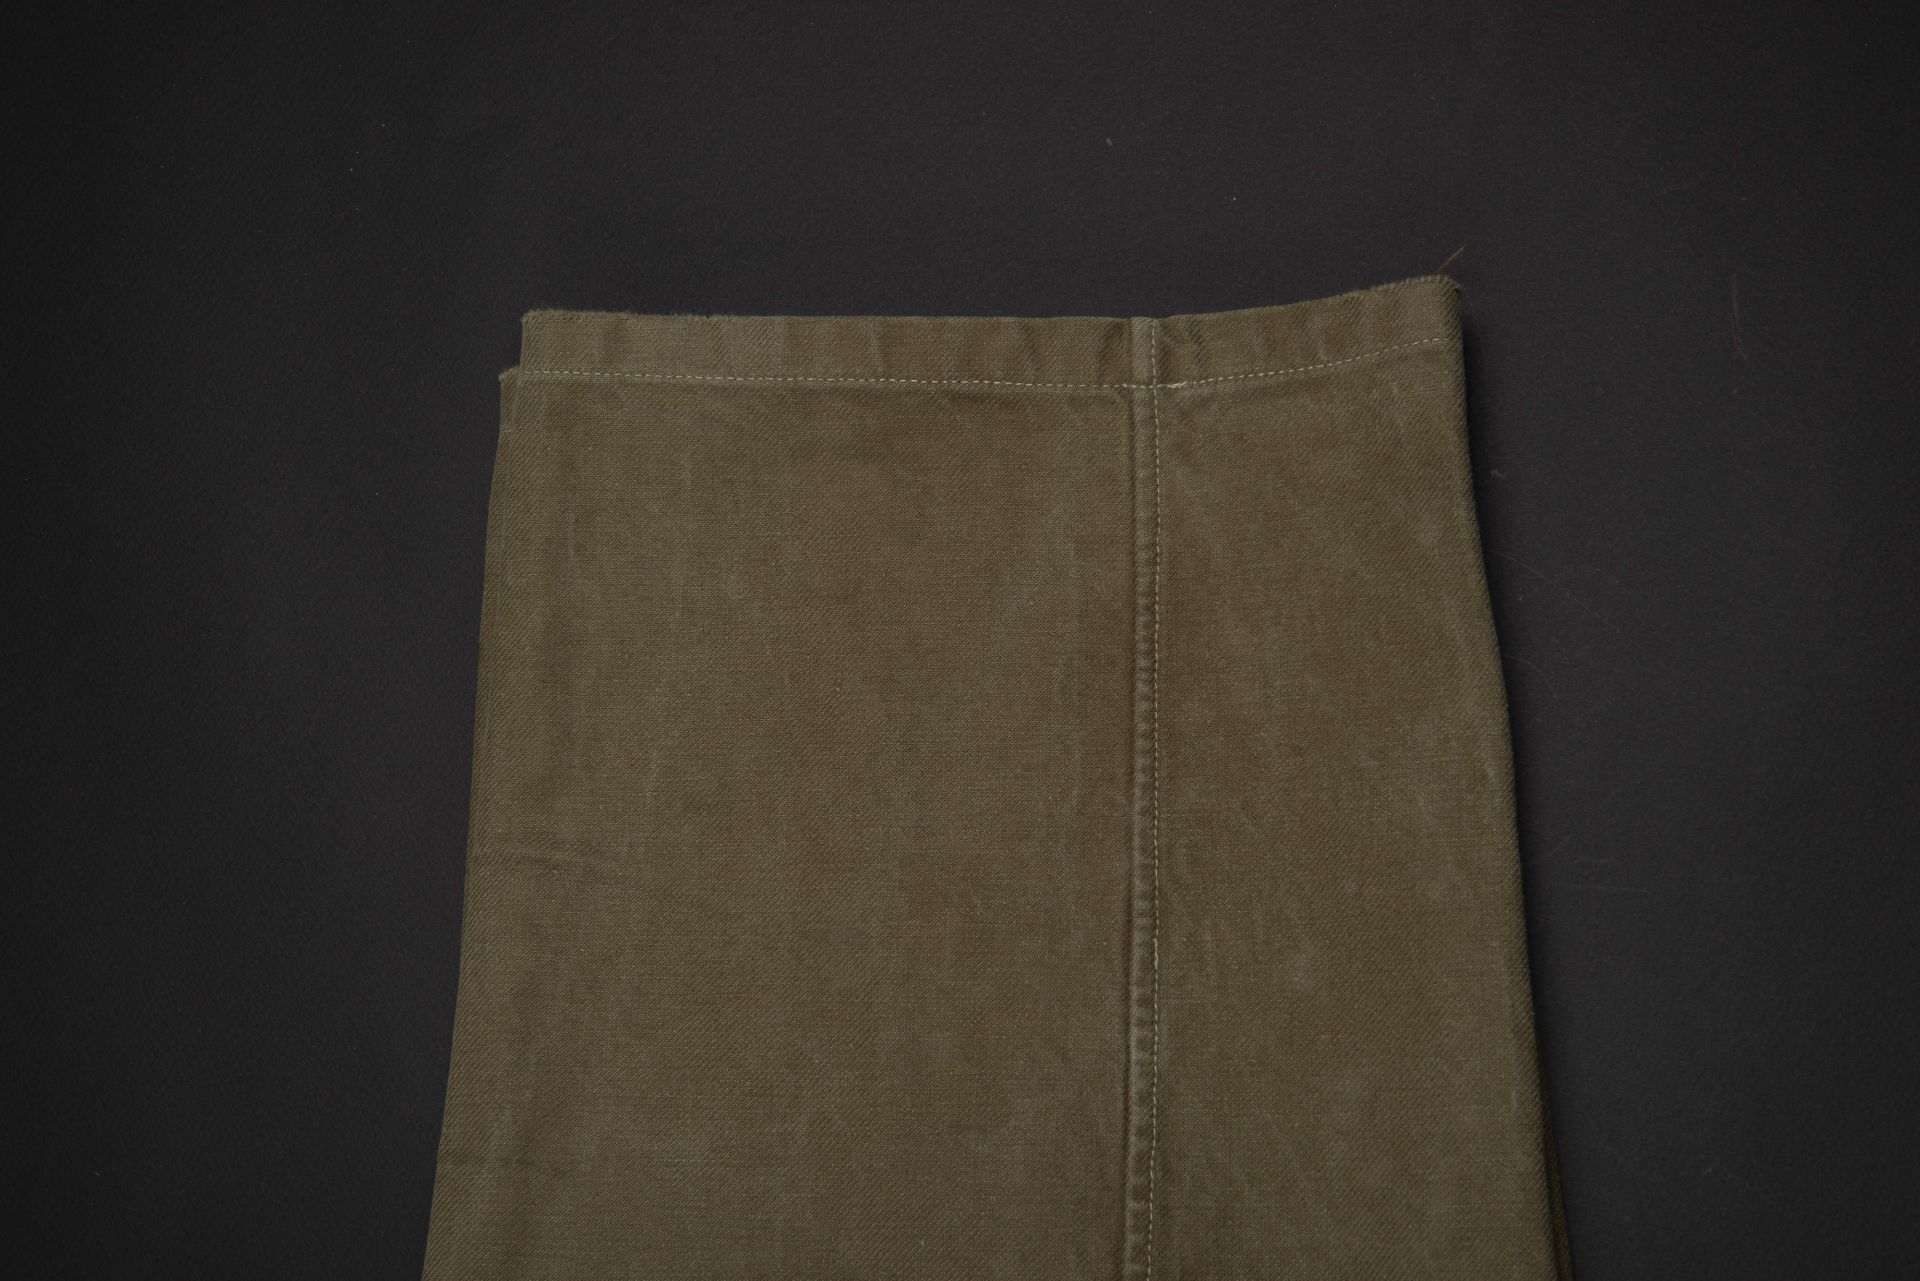 Pantalon tropical. AK tropical trousers. - Image 2 of 4